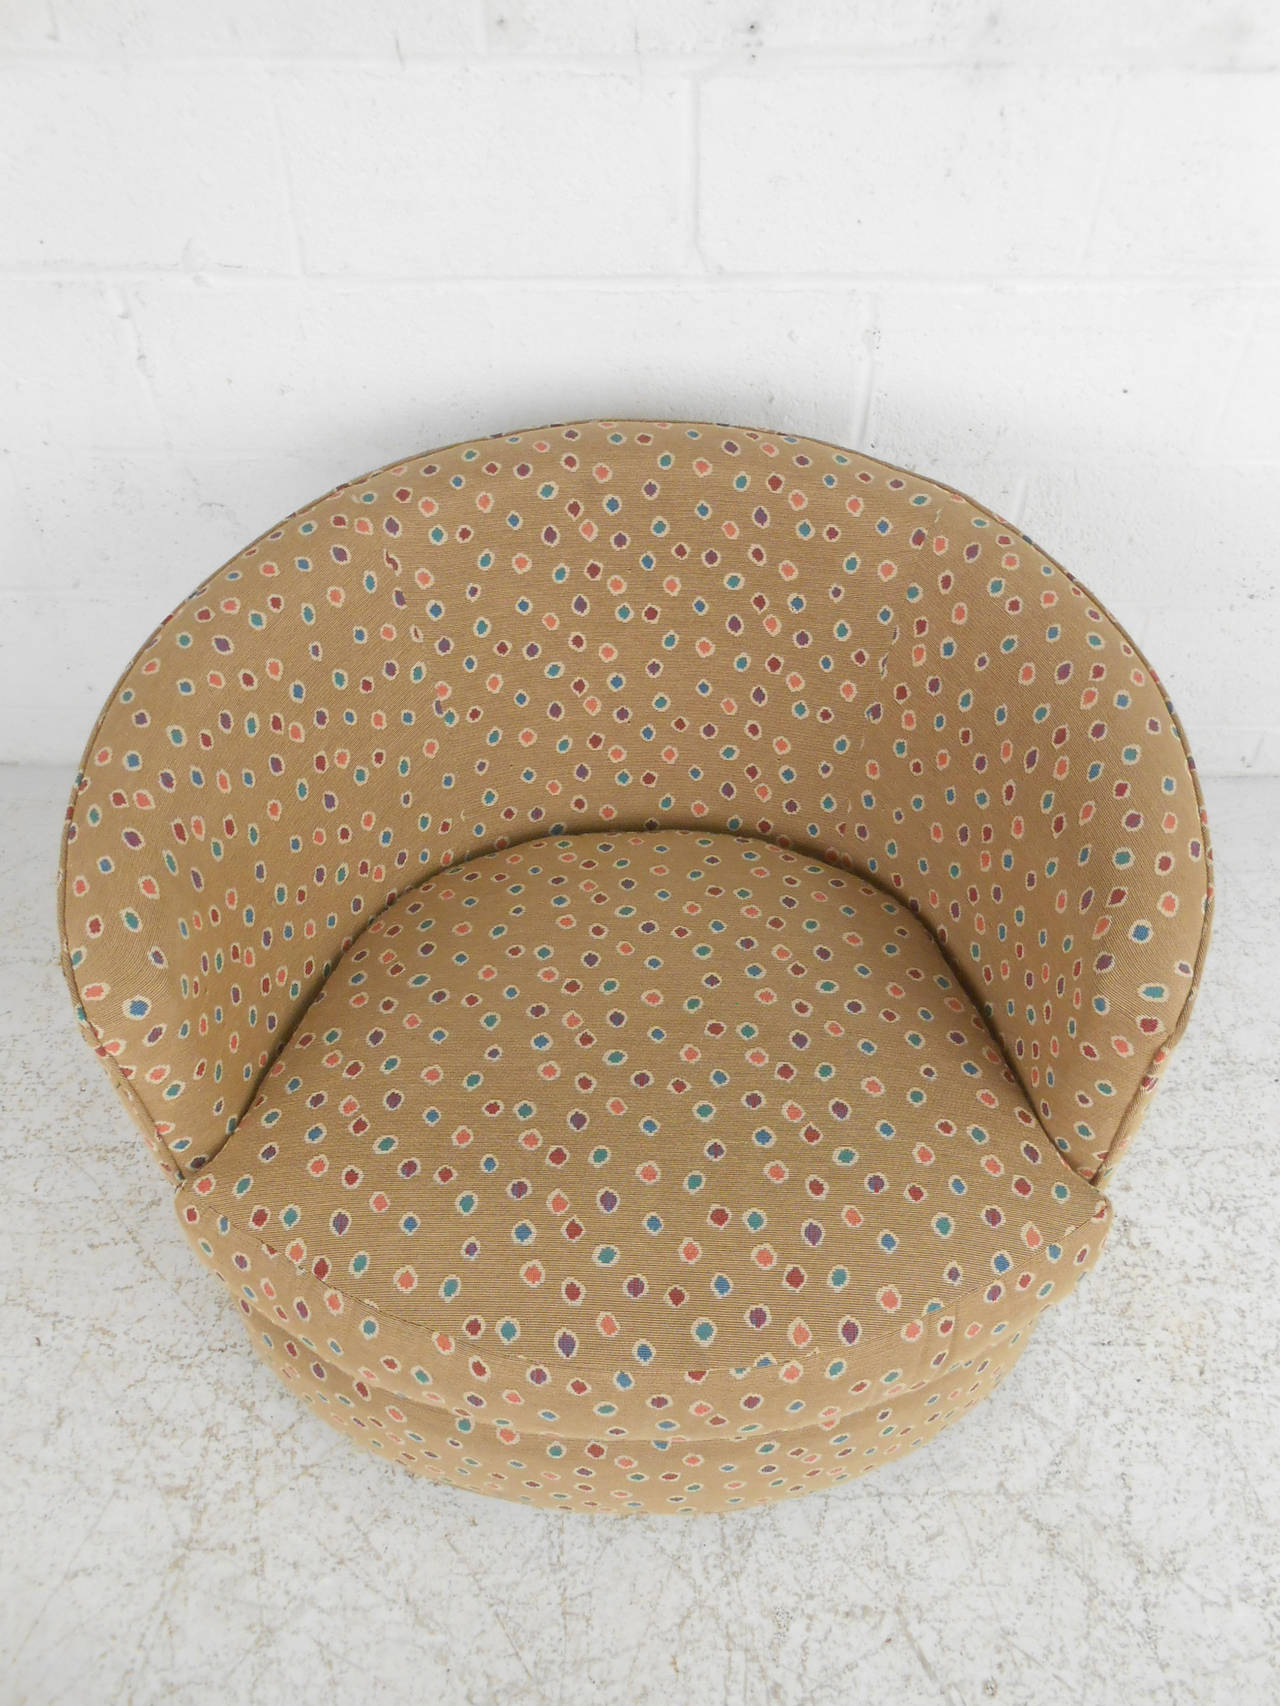 Cette chaise de style midcentury est dotée d'un confortable dossier en forme de tonneau et d'une base pivotante. Le tissu et le rembourrage sont confortables et propres. Veuillez confirmer la localisation de l'article (NY ou NJ).